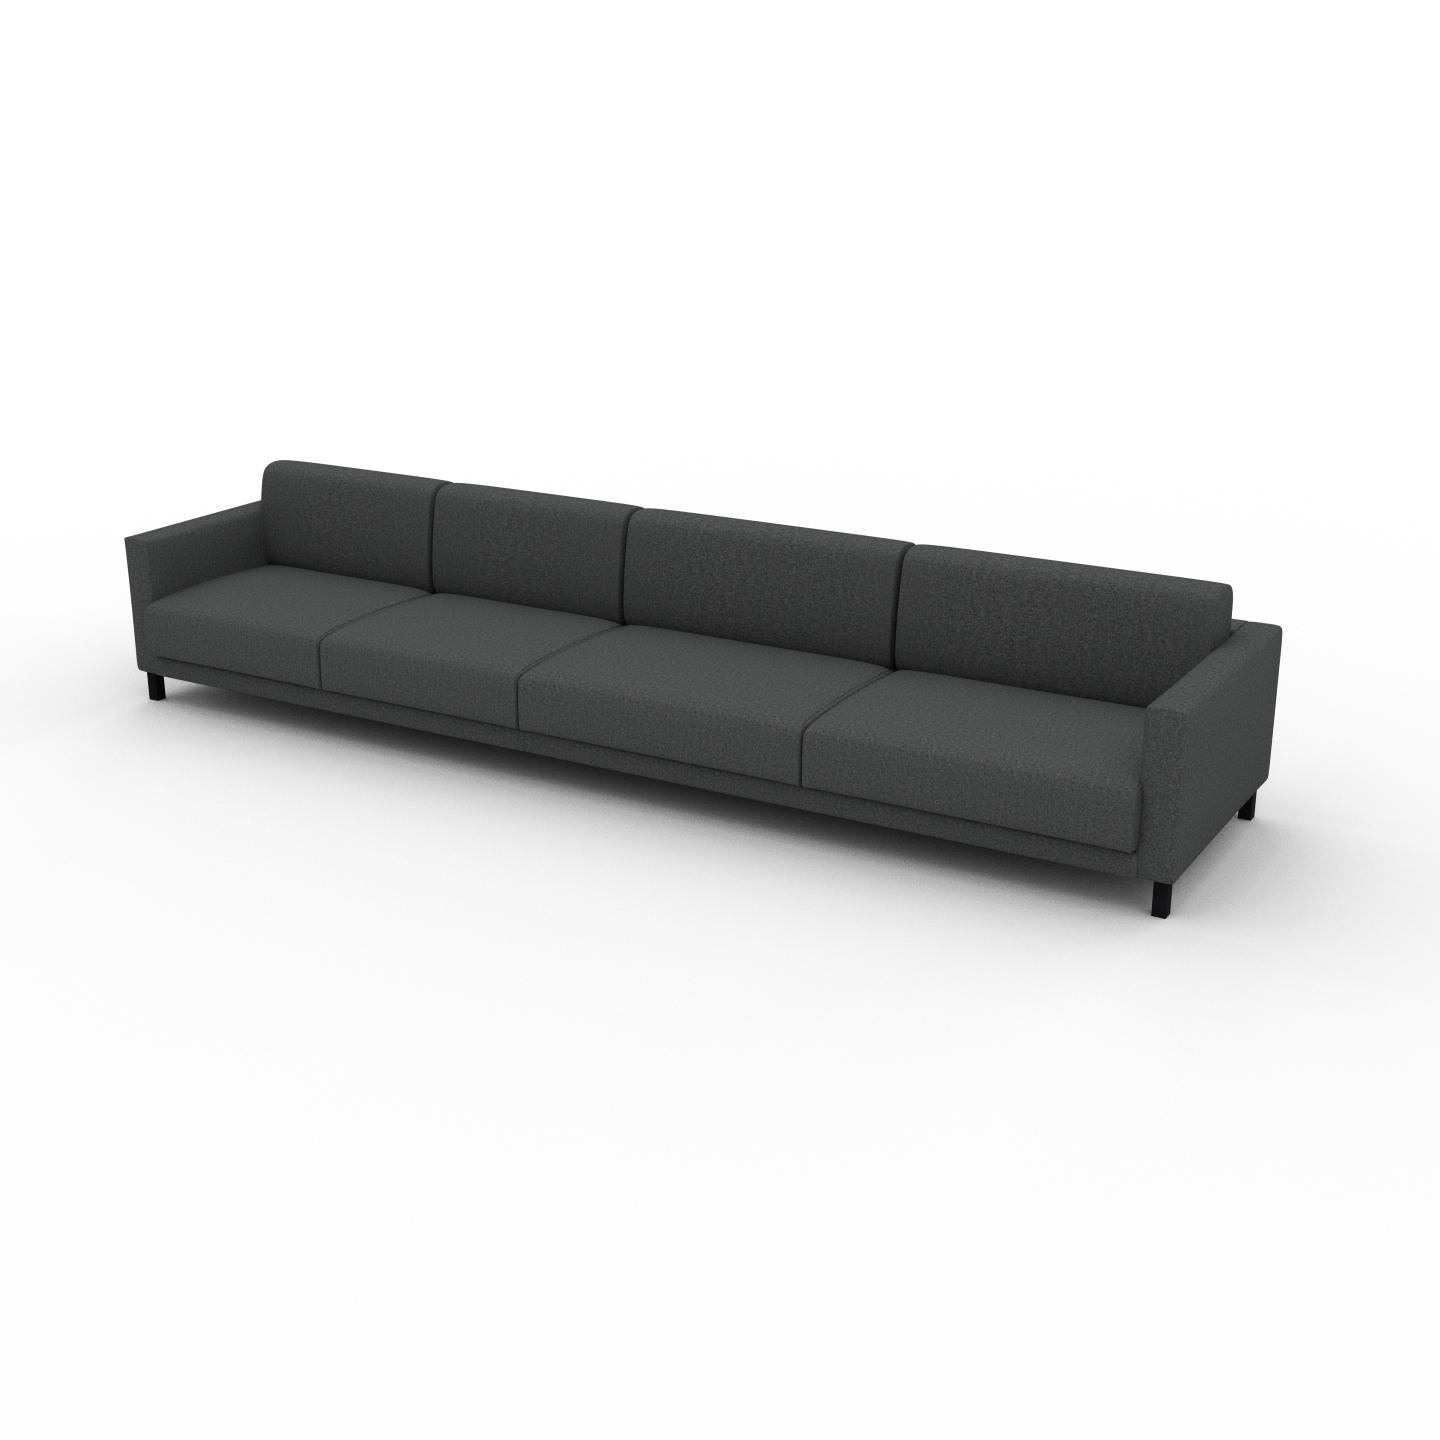 MYCS Sofa Steingrau - Moderne Designer-Couch: Hochwertige Qualität, einzigartiges Design - 384 x 75 x 98 cm, Komplett anpassbar